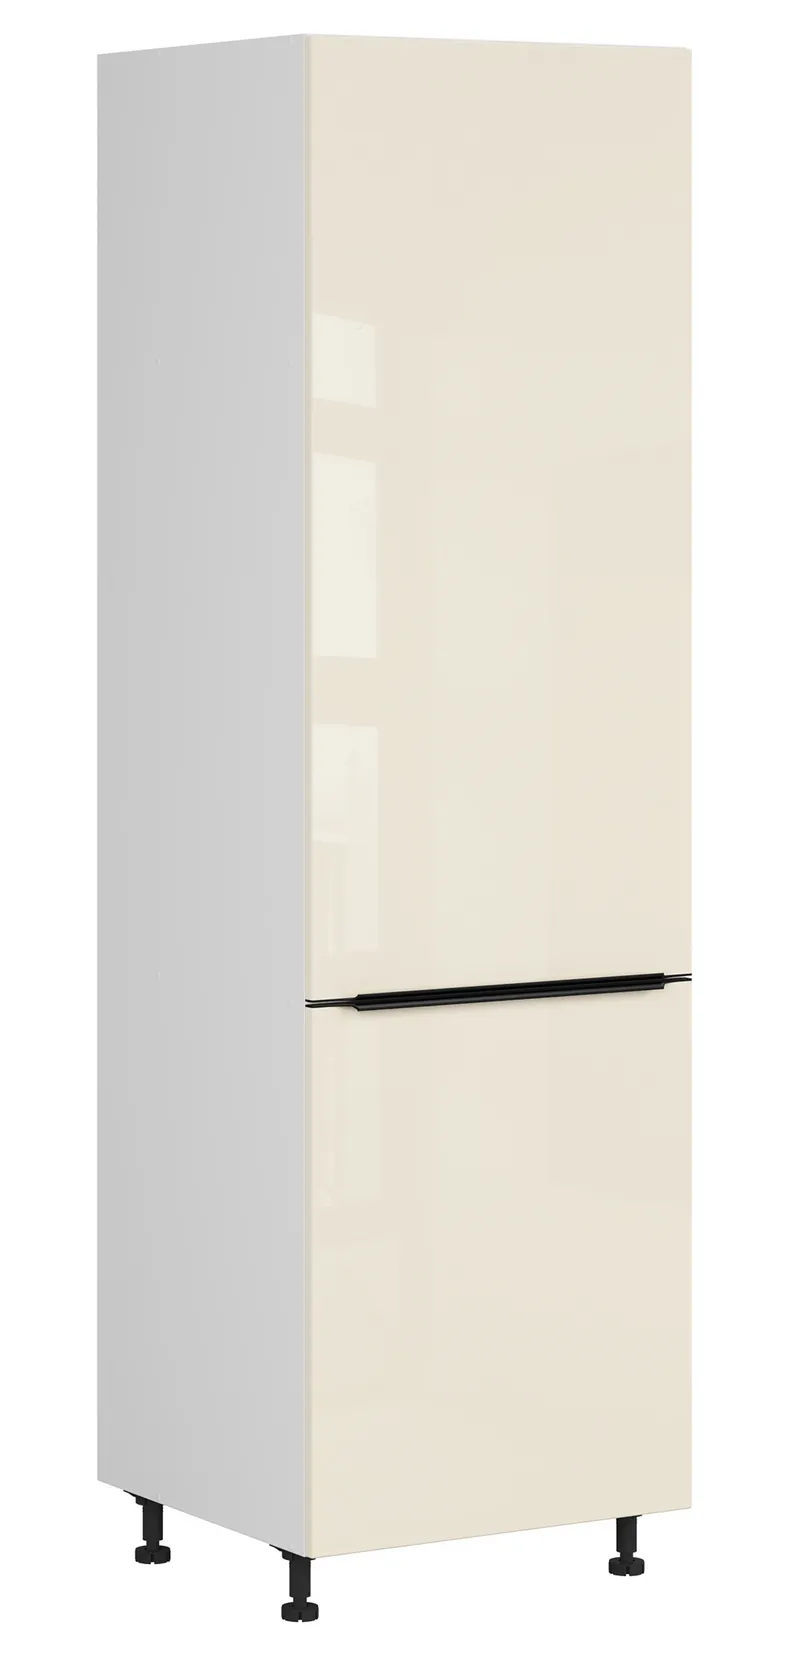 BRW Sole L6 60 см левый высокий кухонный шкаф магнолия жемчуг, альпийский белый/жемчуг магнолии FM_D_60/207_L/L-BAL/MAPE фото №2